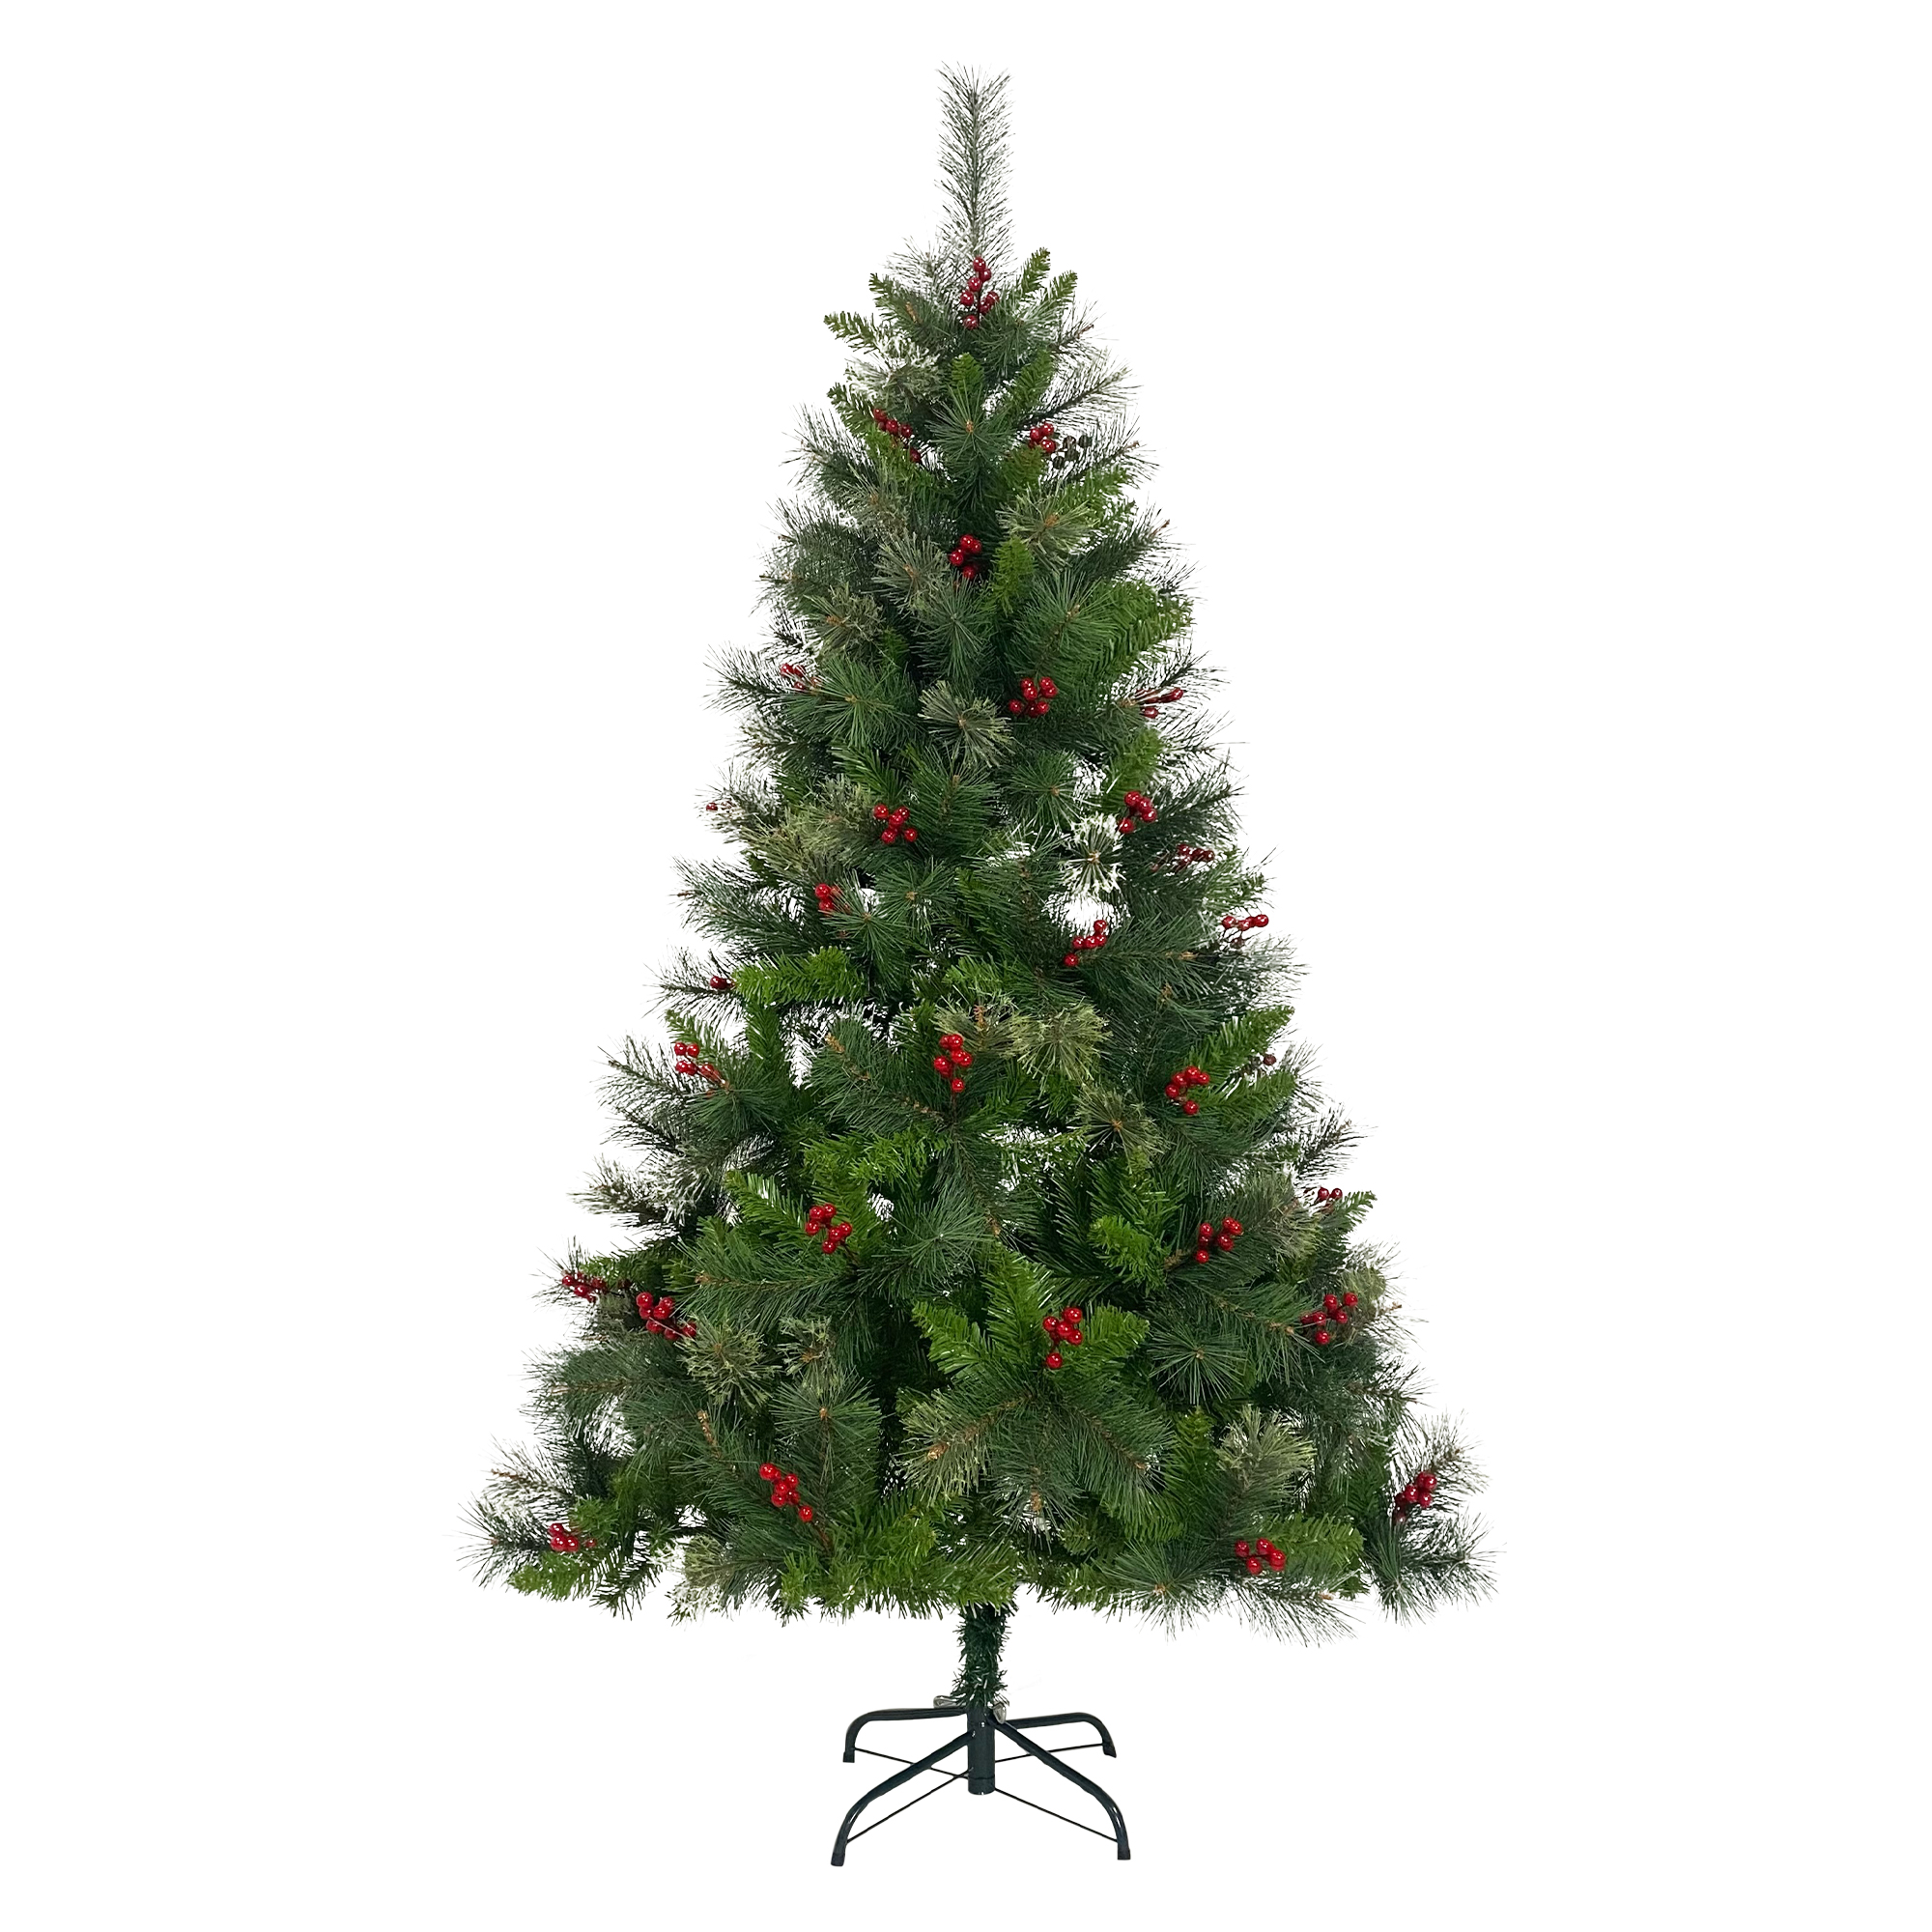 クリスマスツリー 180cm スチール脚 ピカピカライト付き 組み立て簡単